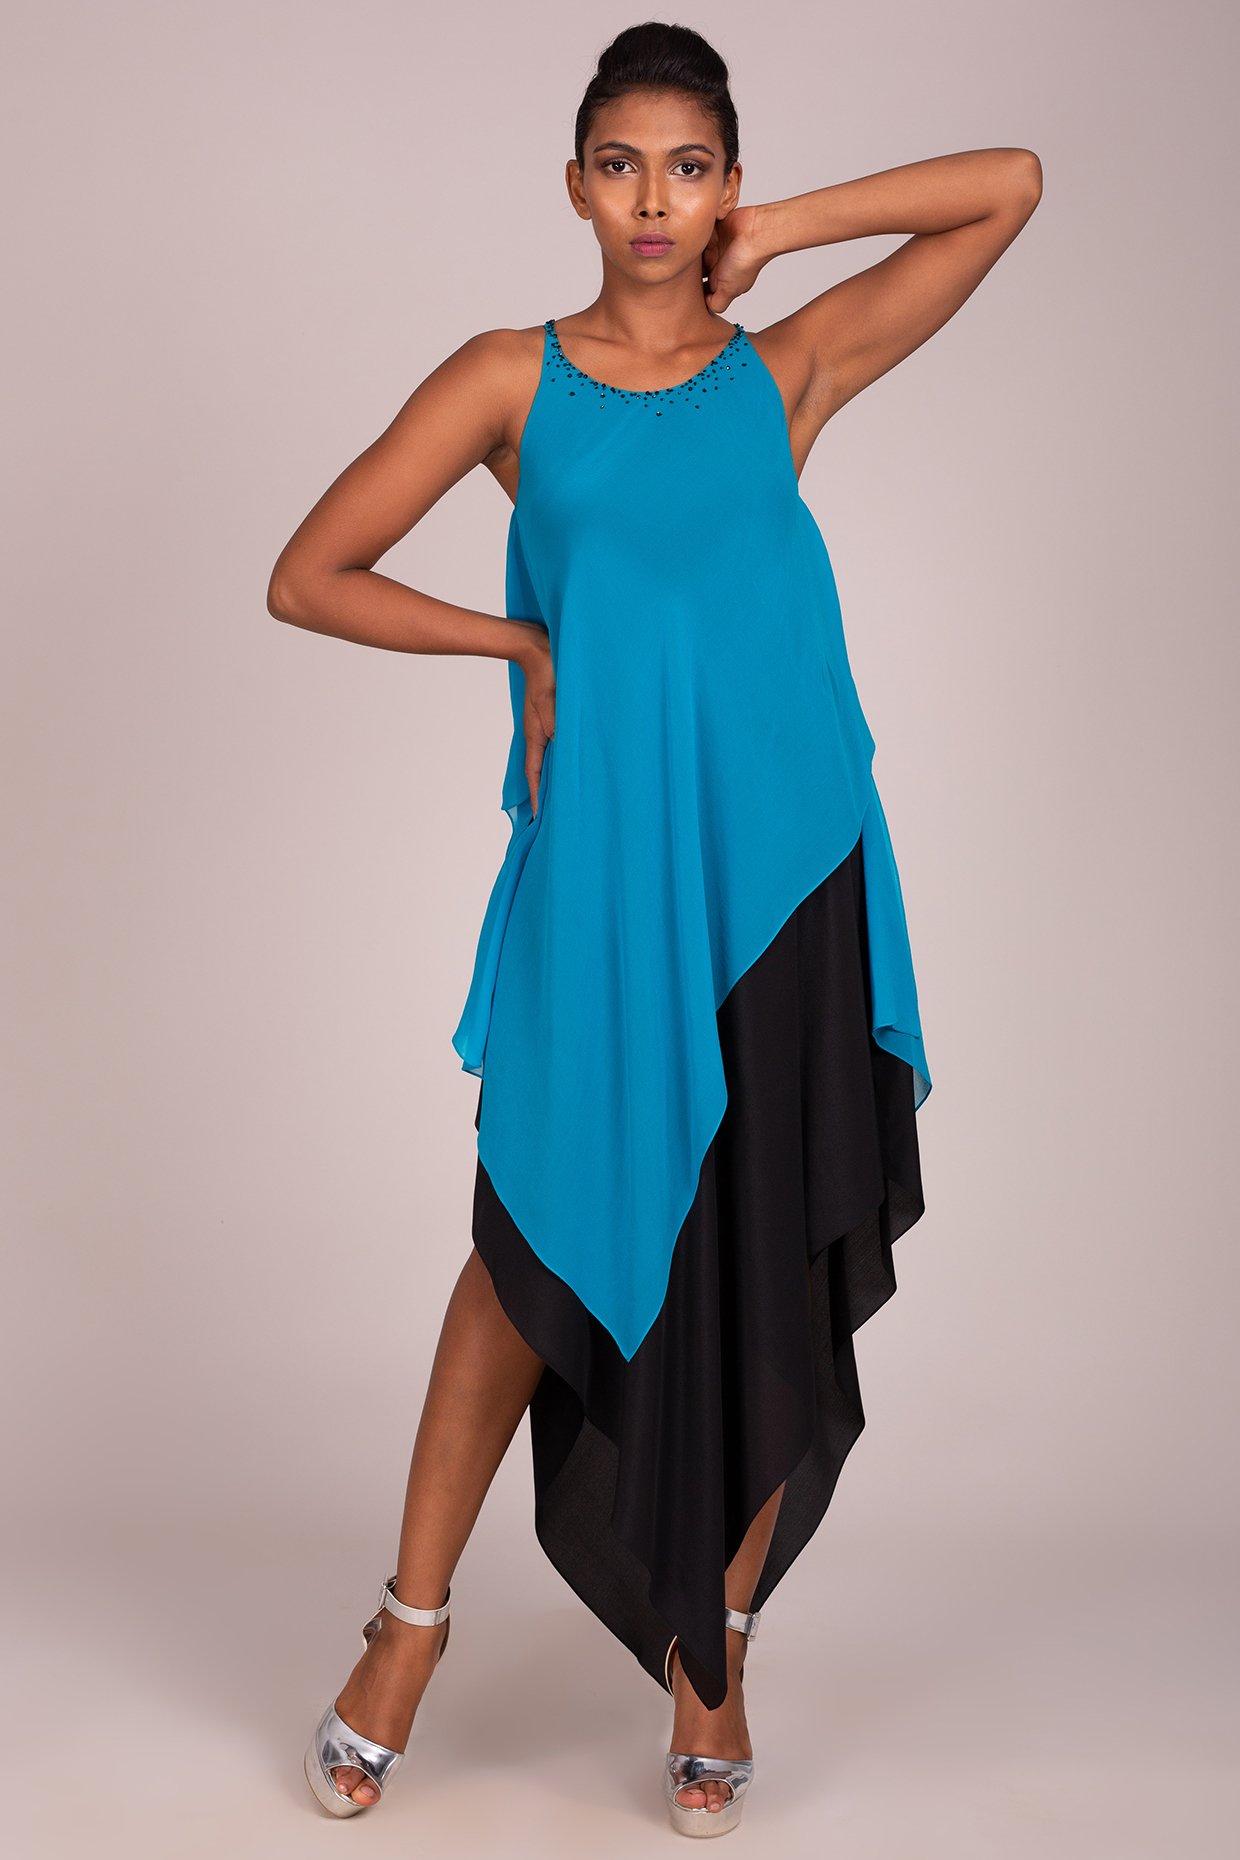 H Dot Hirwa Khoobsurat 101 To 104 Size Set Designs Flair Kurti Gown Exporter